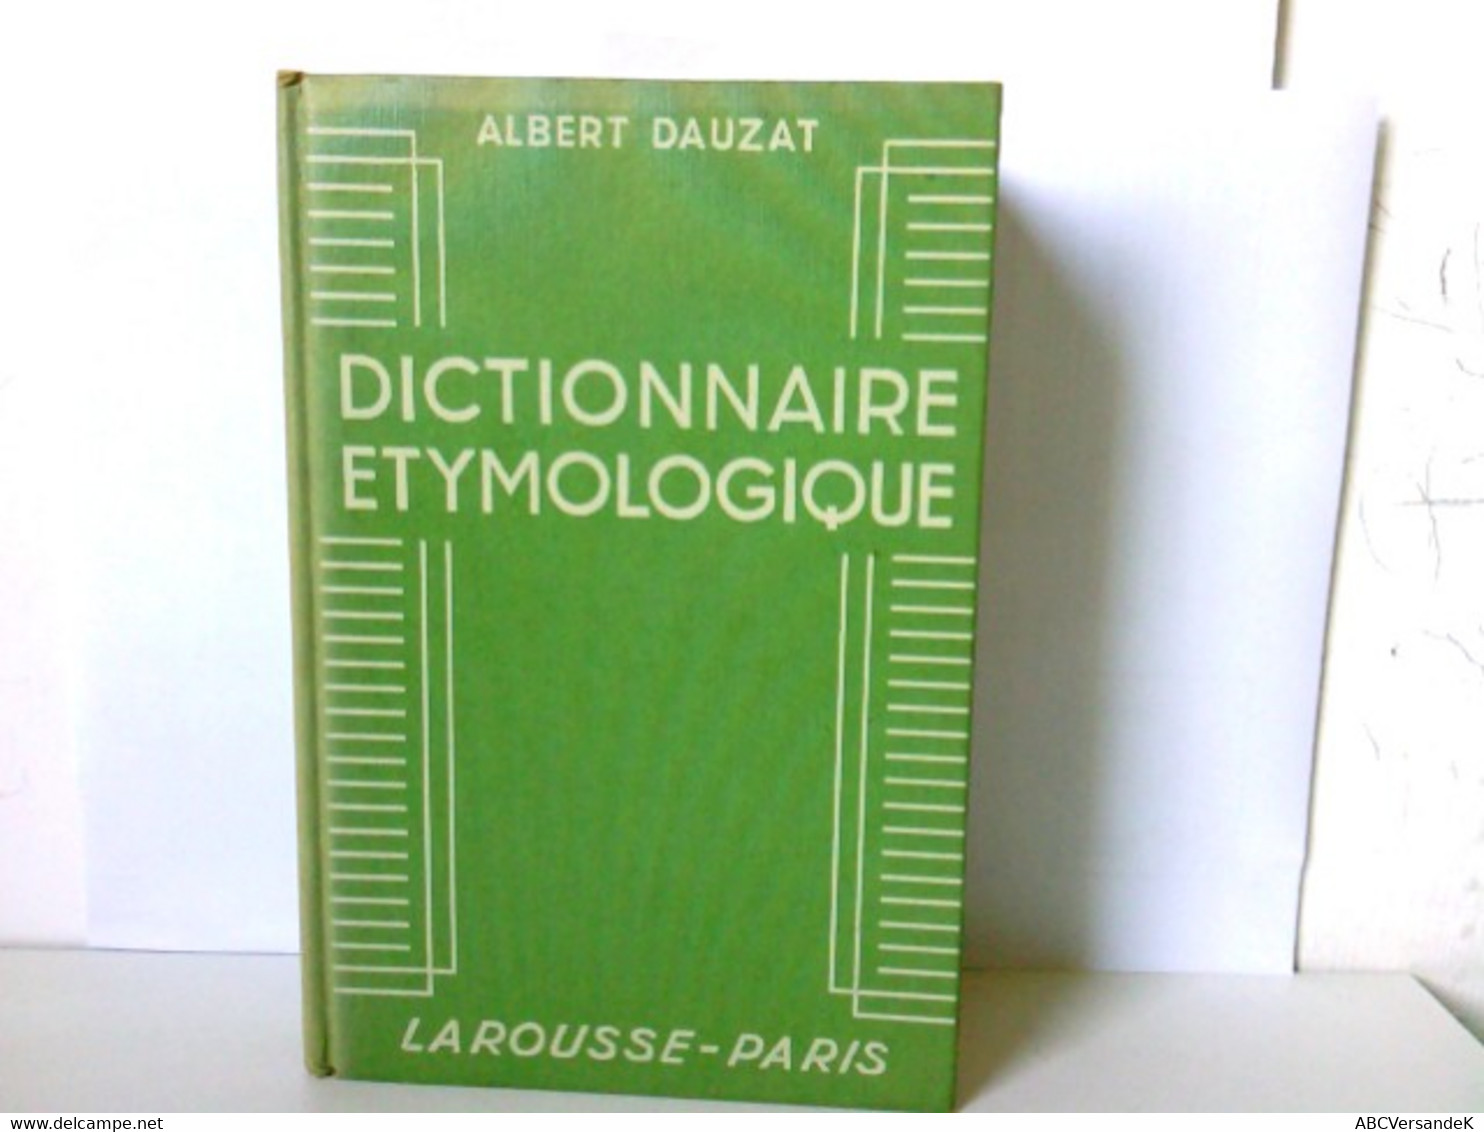 Dictionnaire ètymologiquee. - Lexika